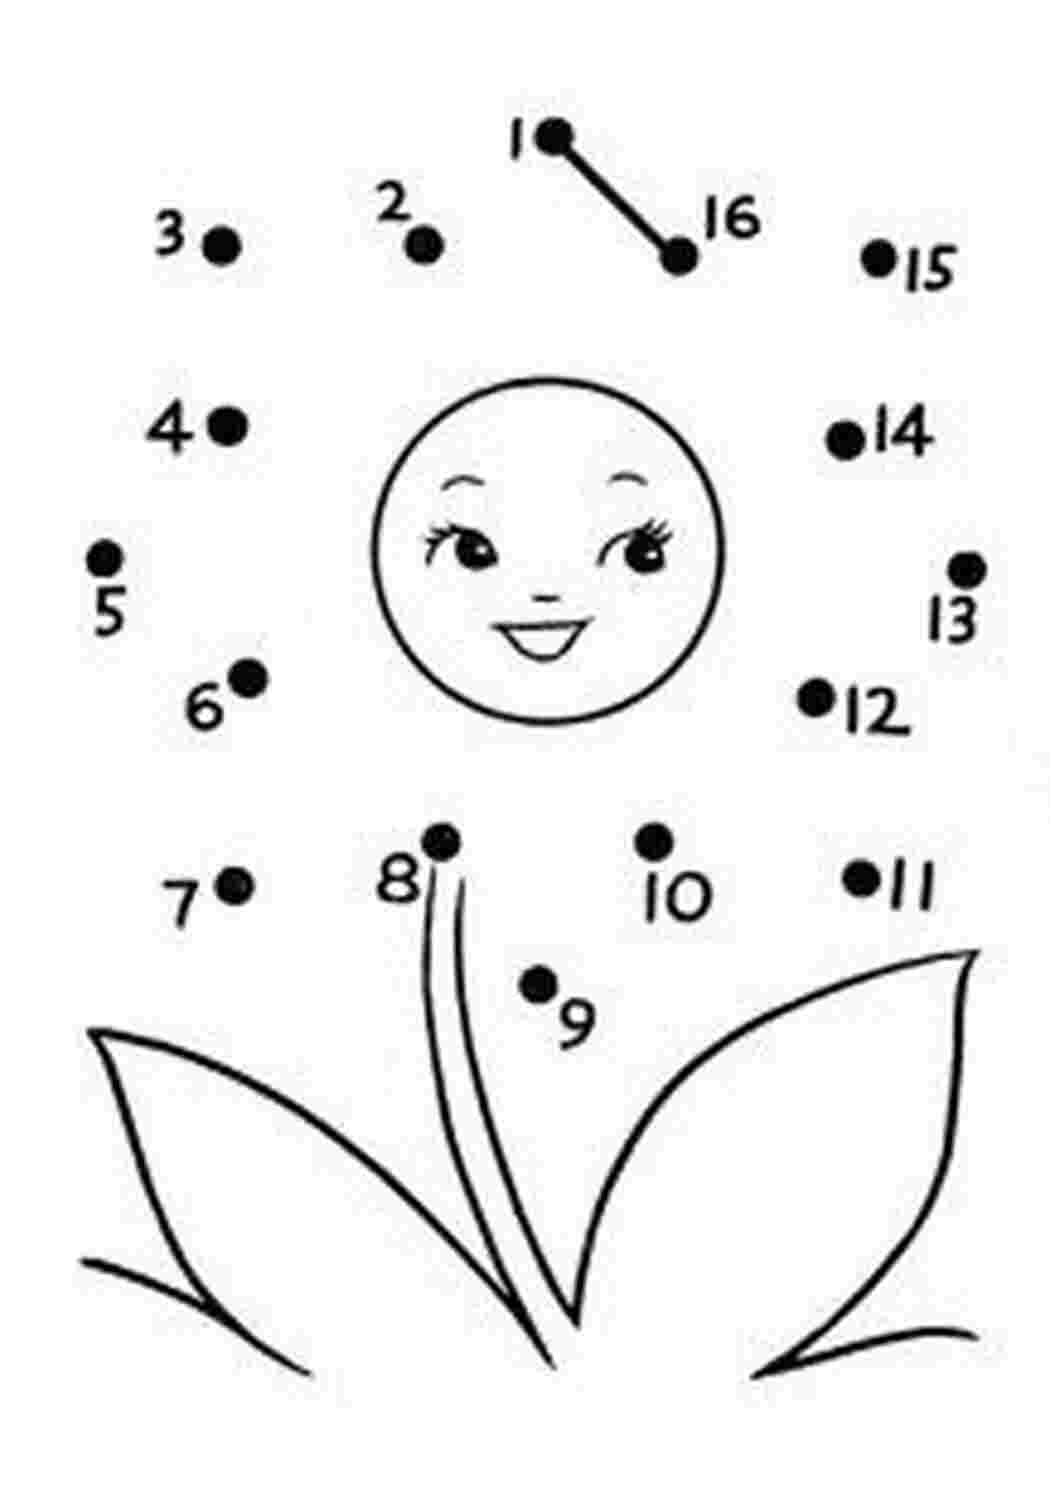 Раскраски Соедини по порядку. Увлекательное изучение цифр с детьми Задания для раннего математического развития ребенка. Соедини по цифрам и раскрась получившуюся картинку.